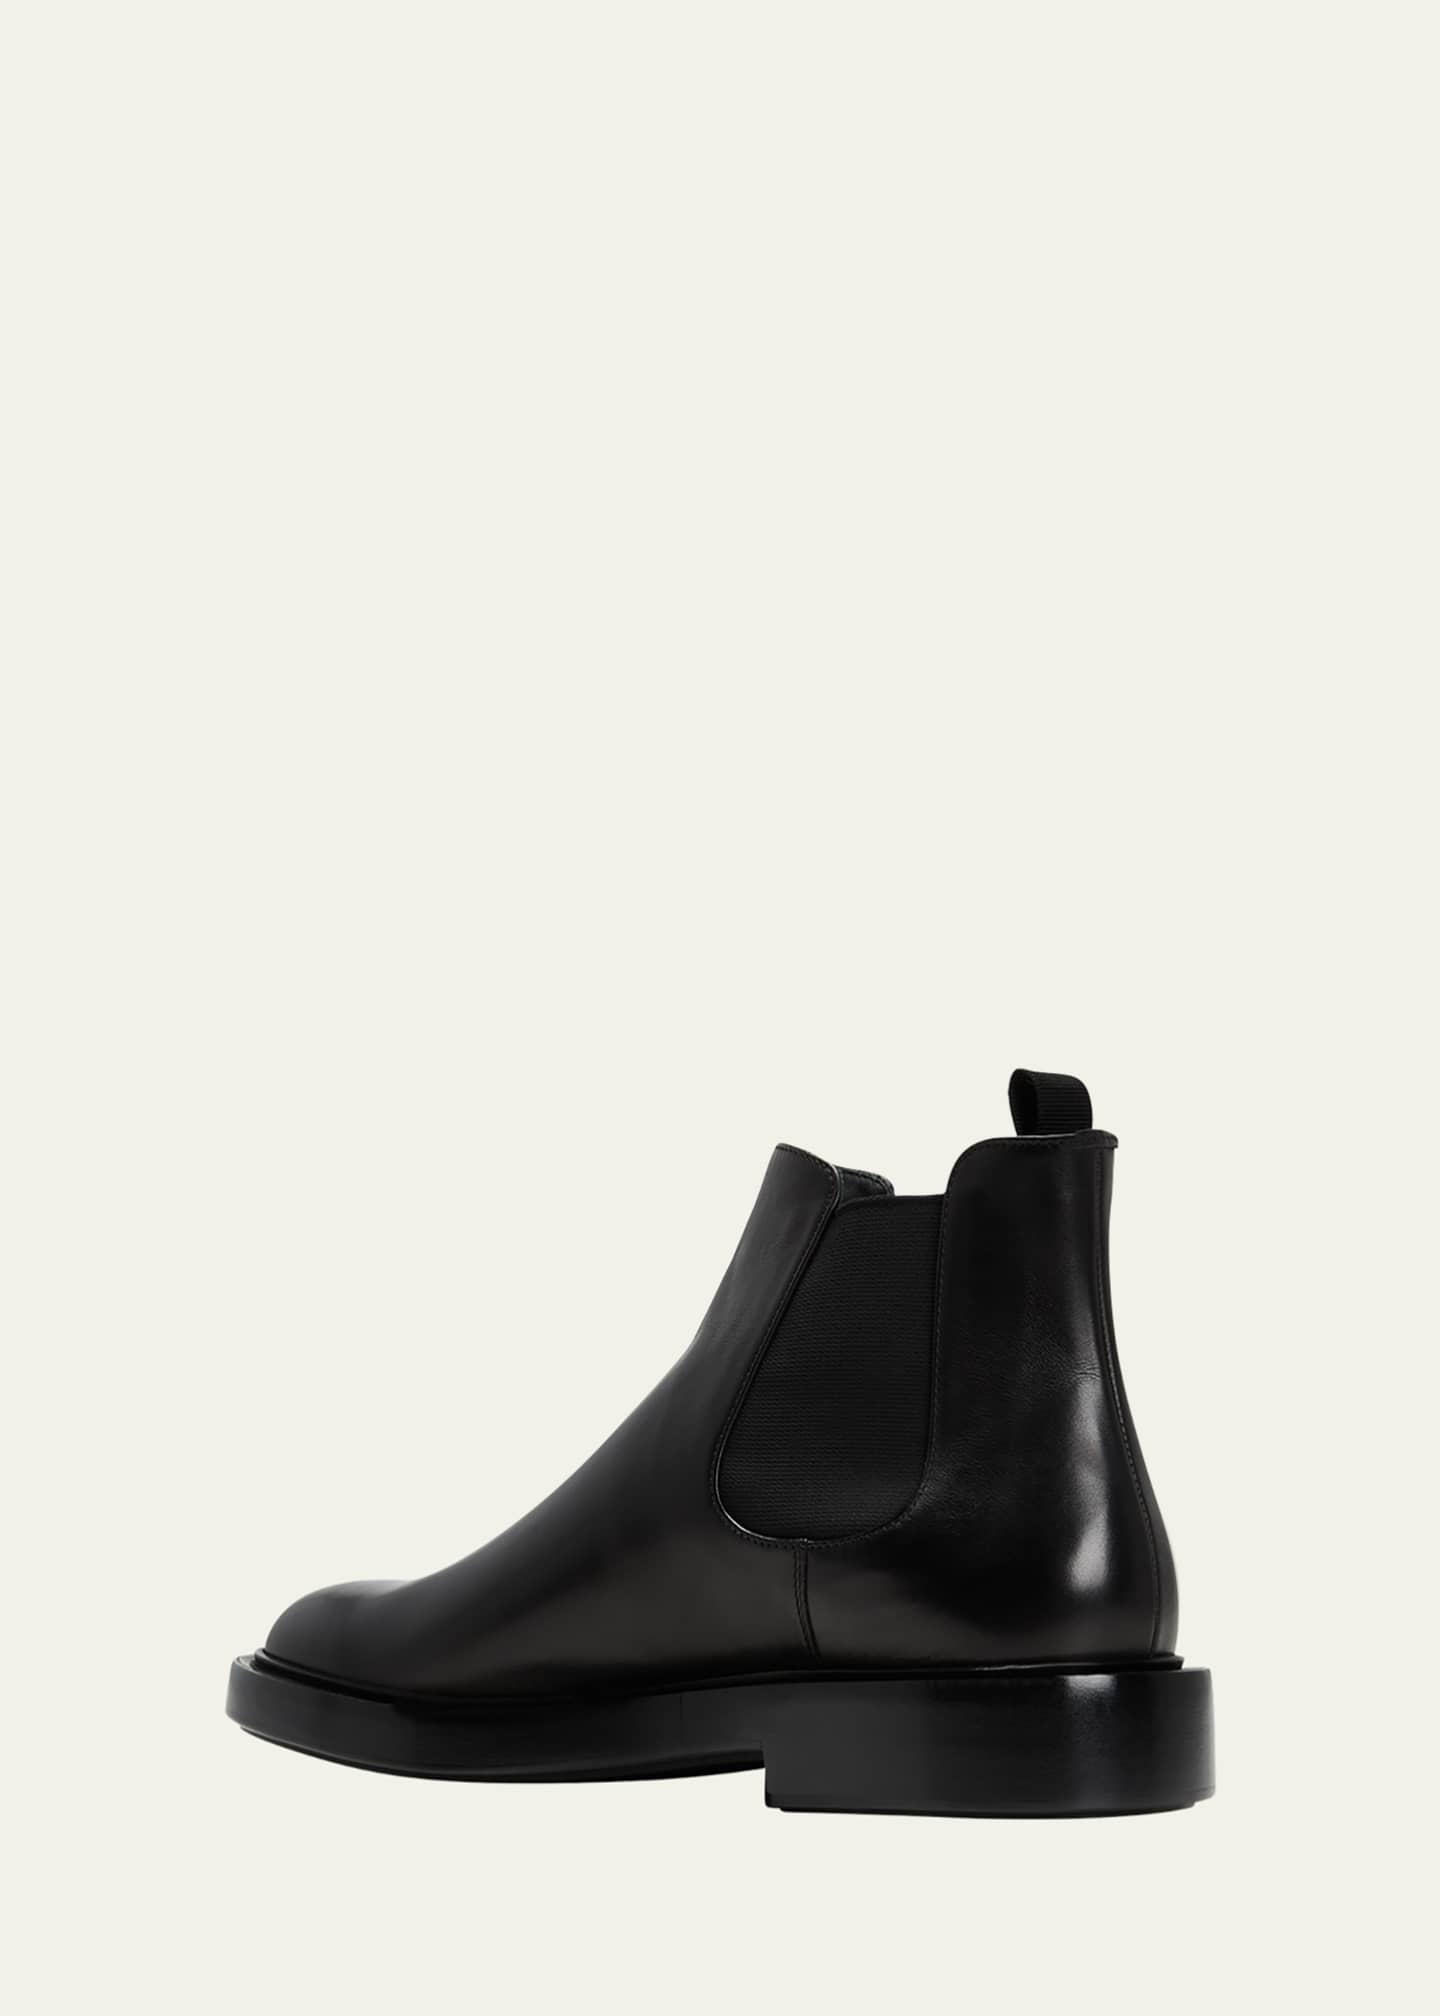 Giorgio Armani Men's Leather Chelsea Boots - Bergdorf